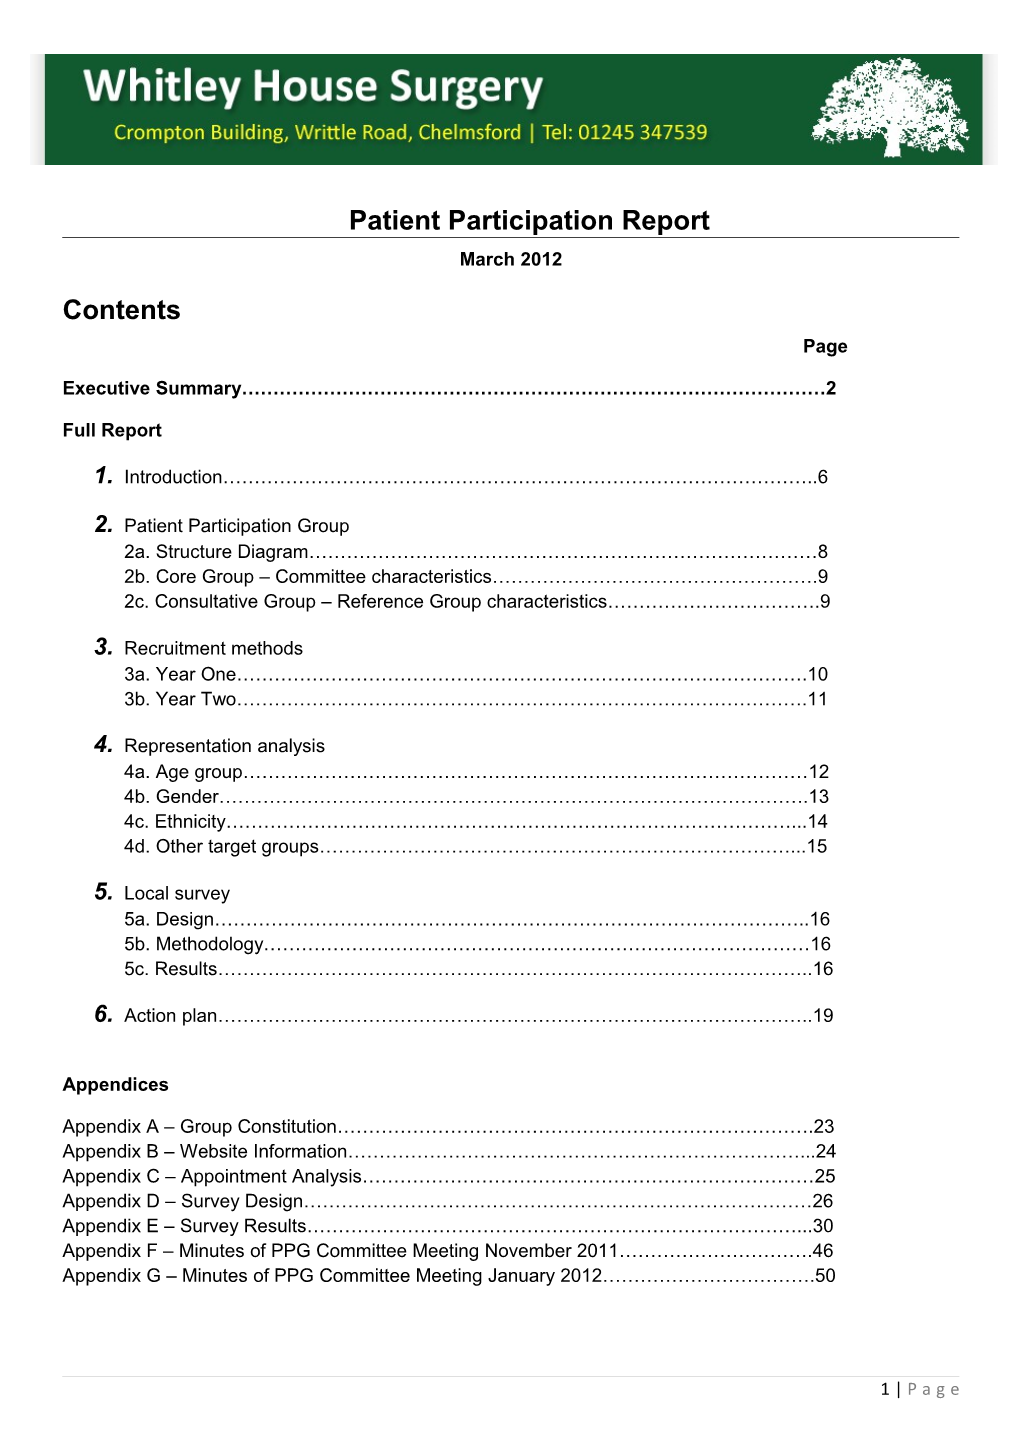 Patient Participation DES